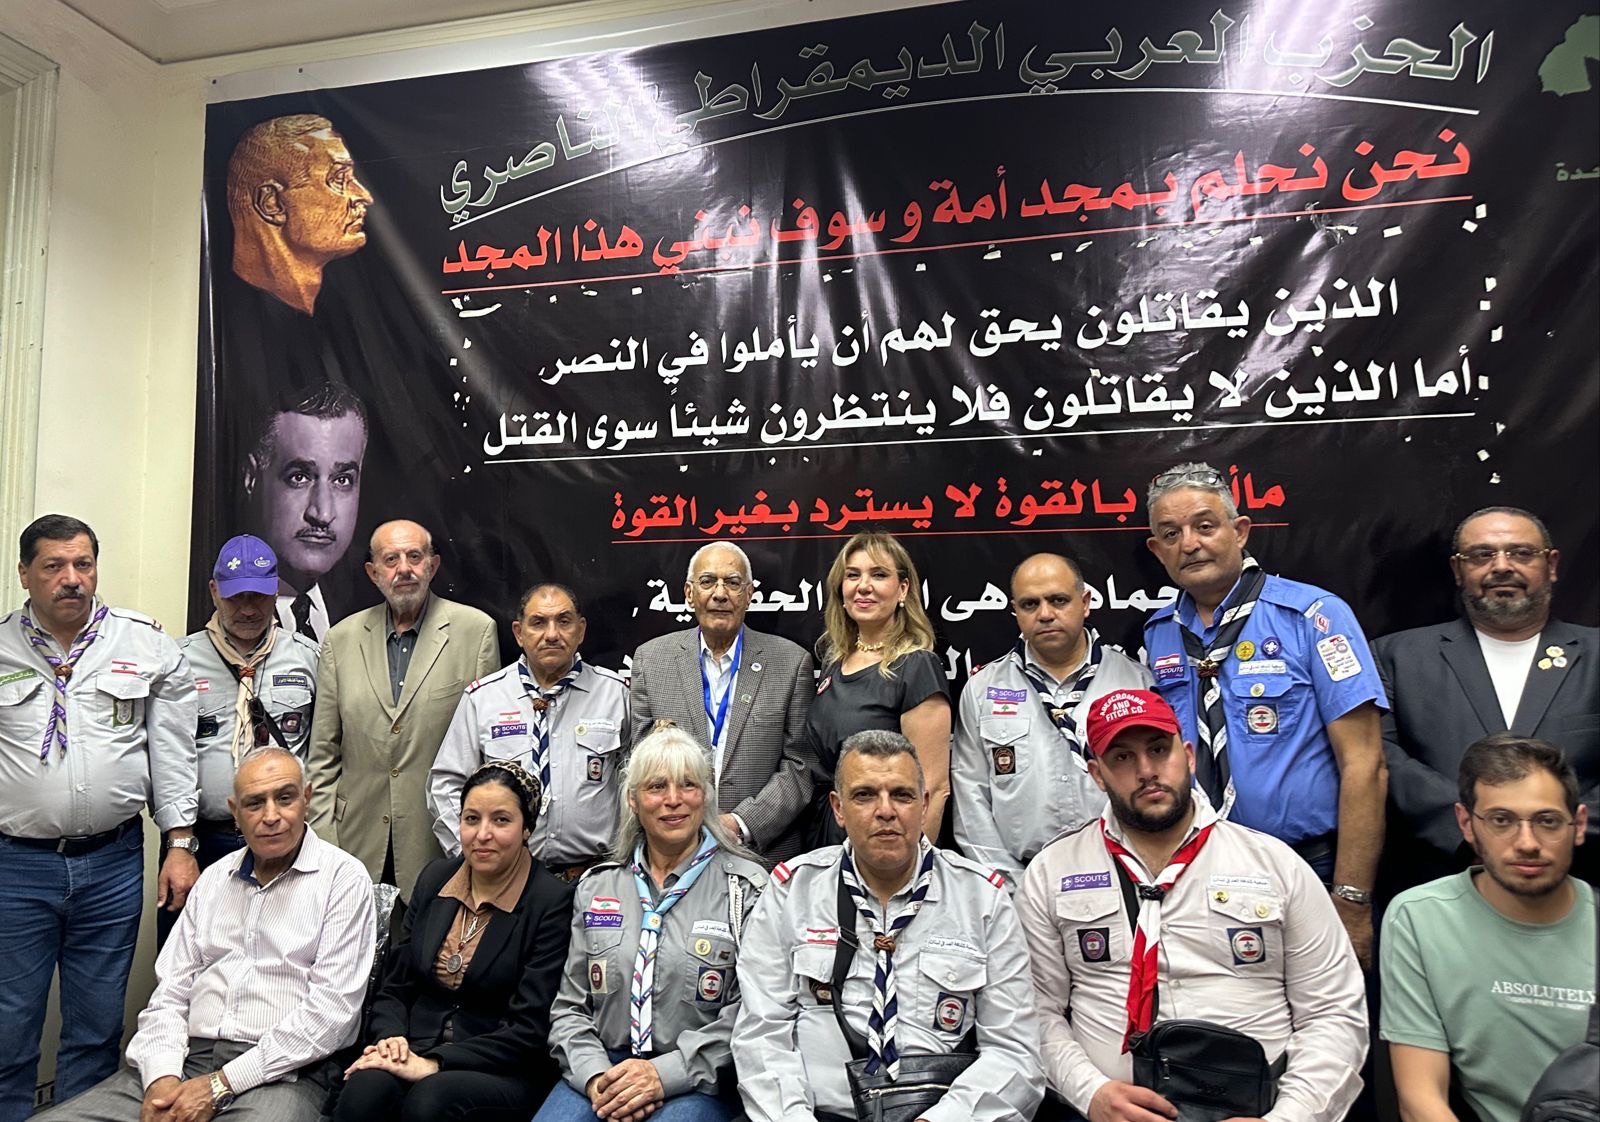 وفد قادة الجمعيات الكشفية اللبنانية زار الحزب العربي الديموقراطي الناصري في القاهرة